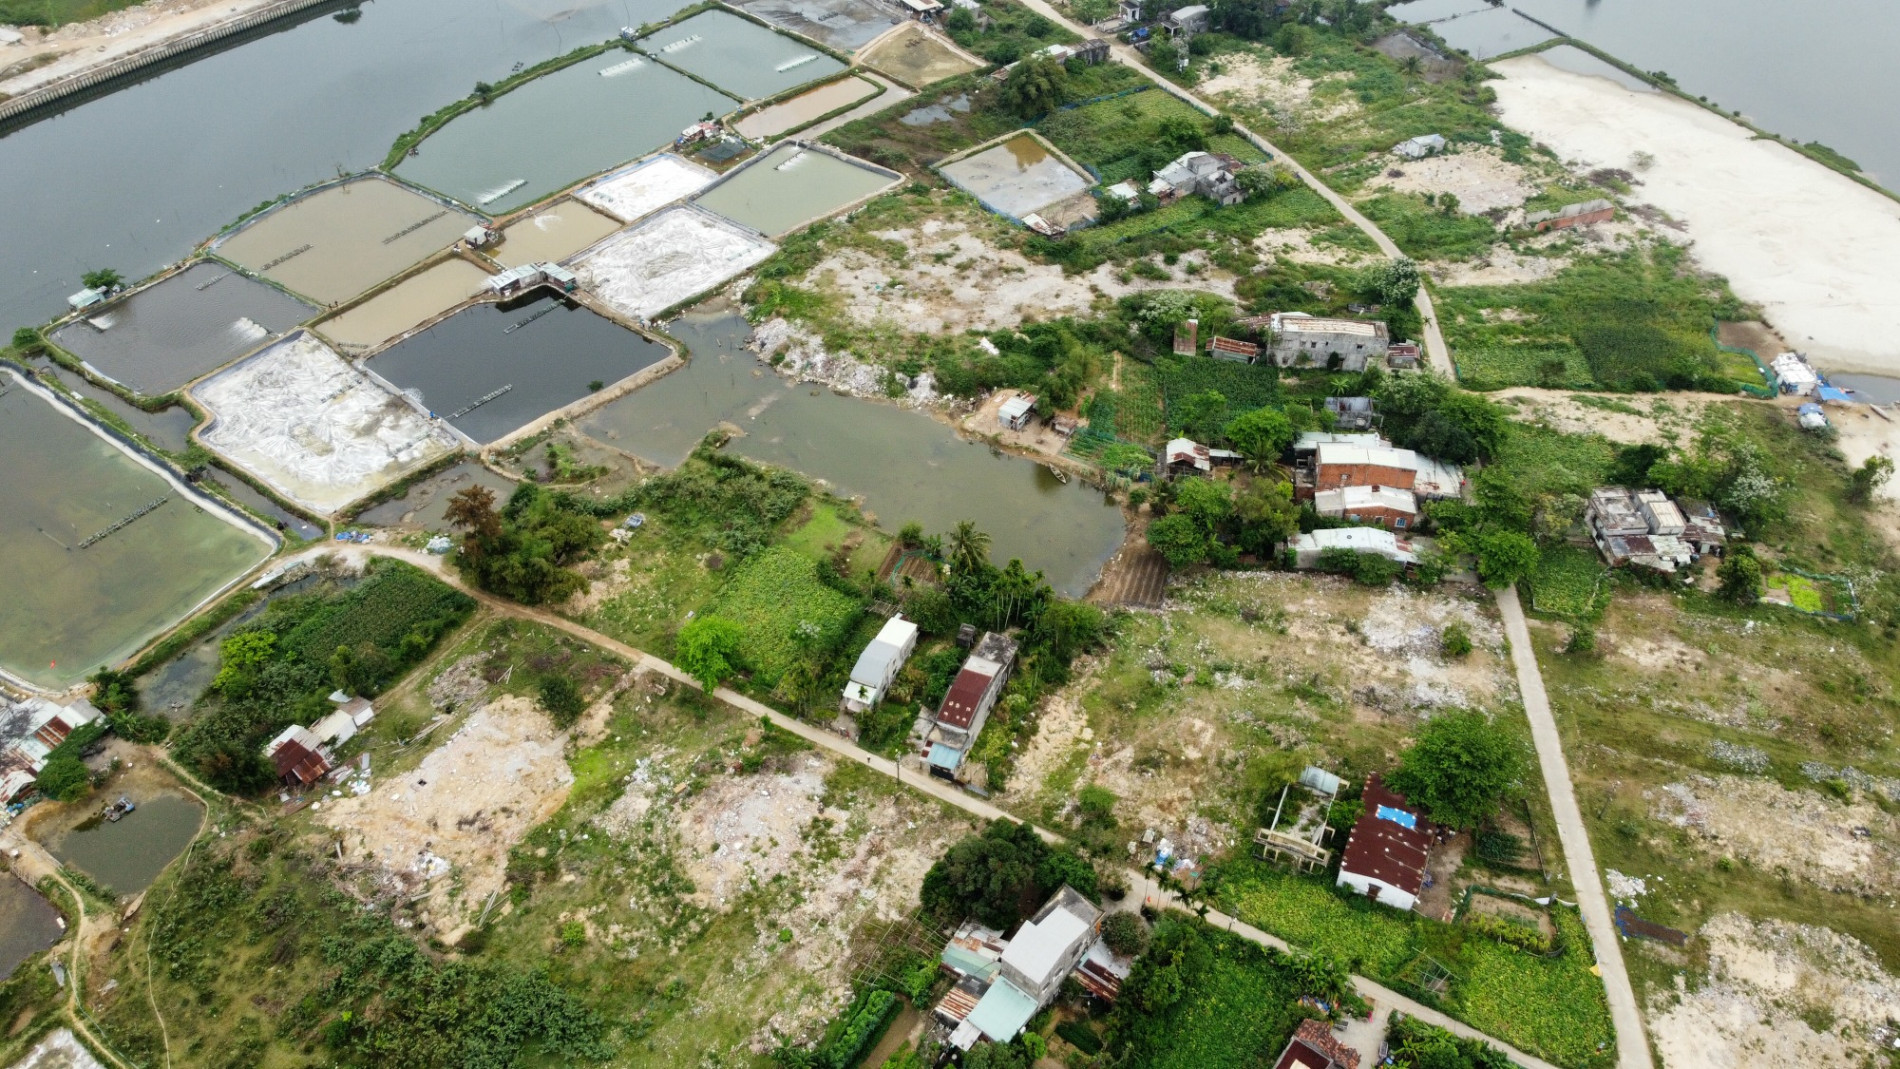 Cận cảnh hòn đảo độc đáo phía nam Đà Nẵng quy hoạch xây dựng hàng trăm lô biệt thự